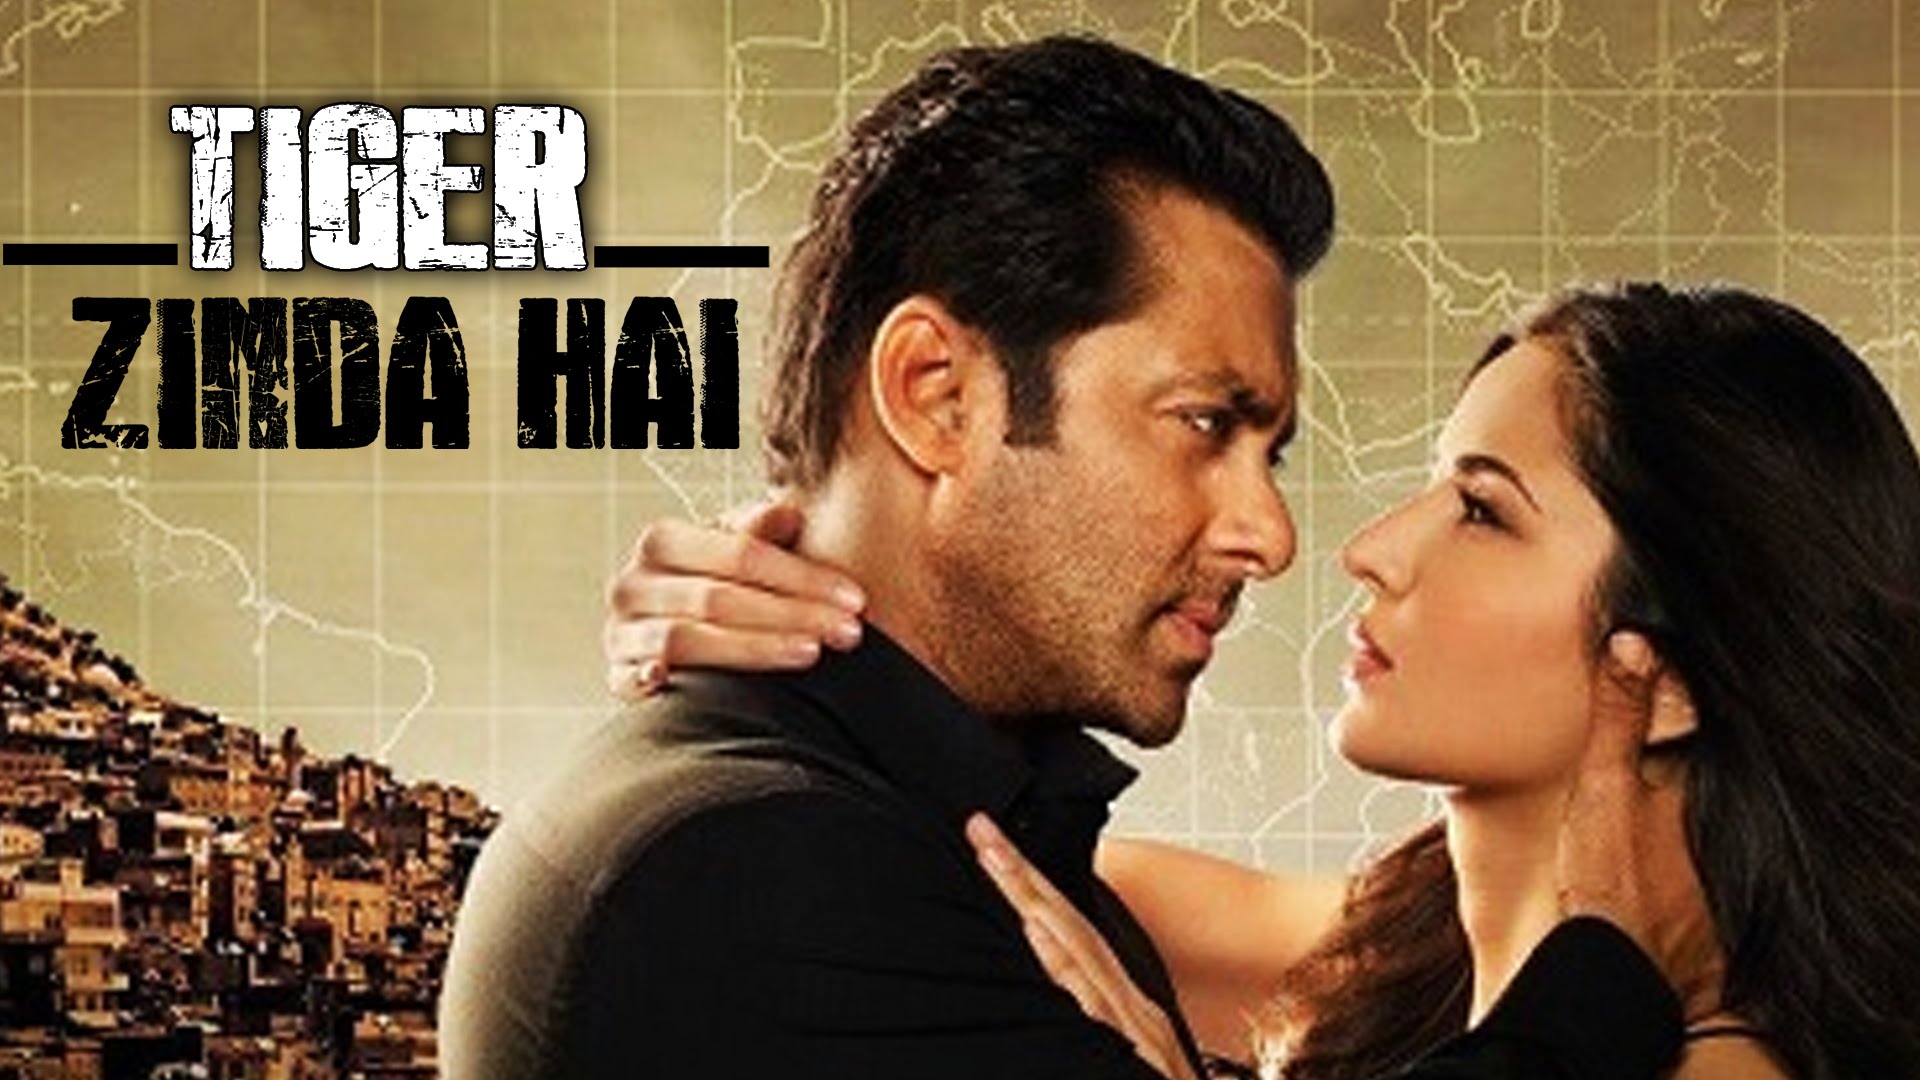 Salman Khan And Katrina Kaif - Tiger Zinda Hai Review - 1920x1080 Wallpaper  